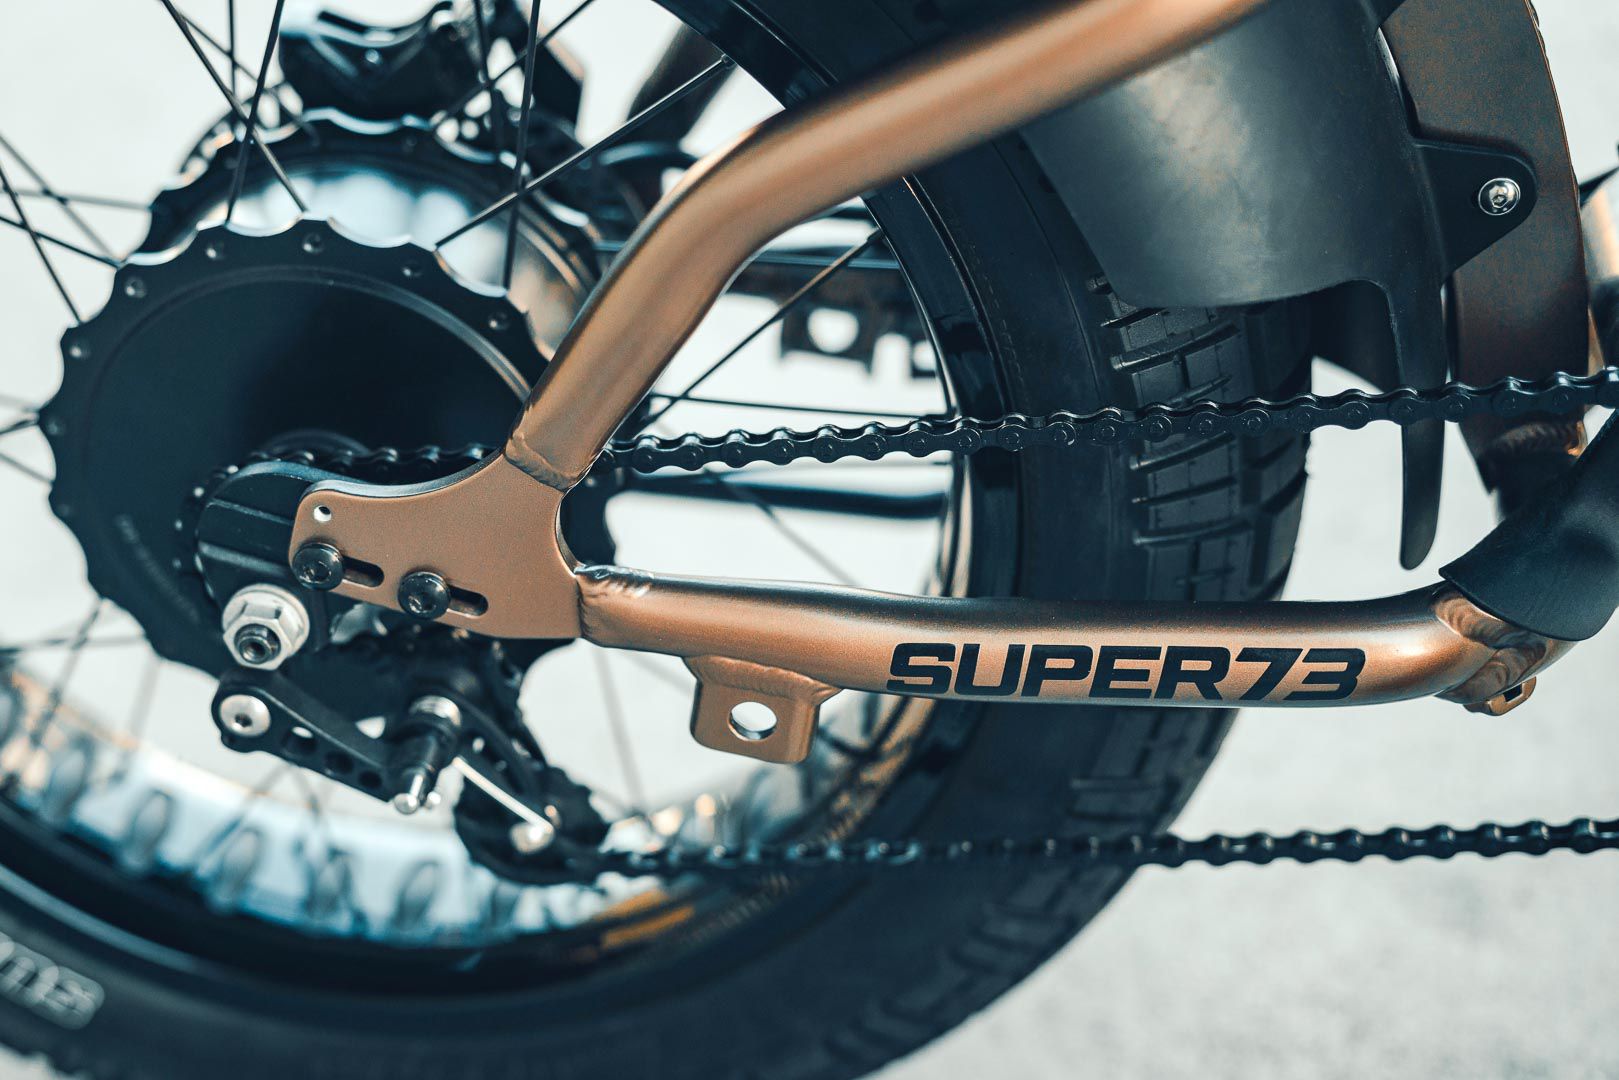 Super73 Flat Track RX: Chiếc xe đạp lai đầy táo bạo